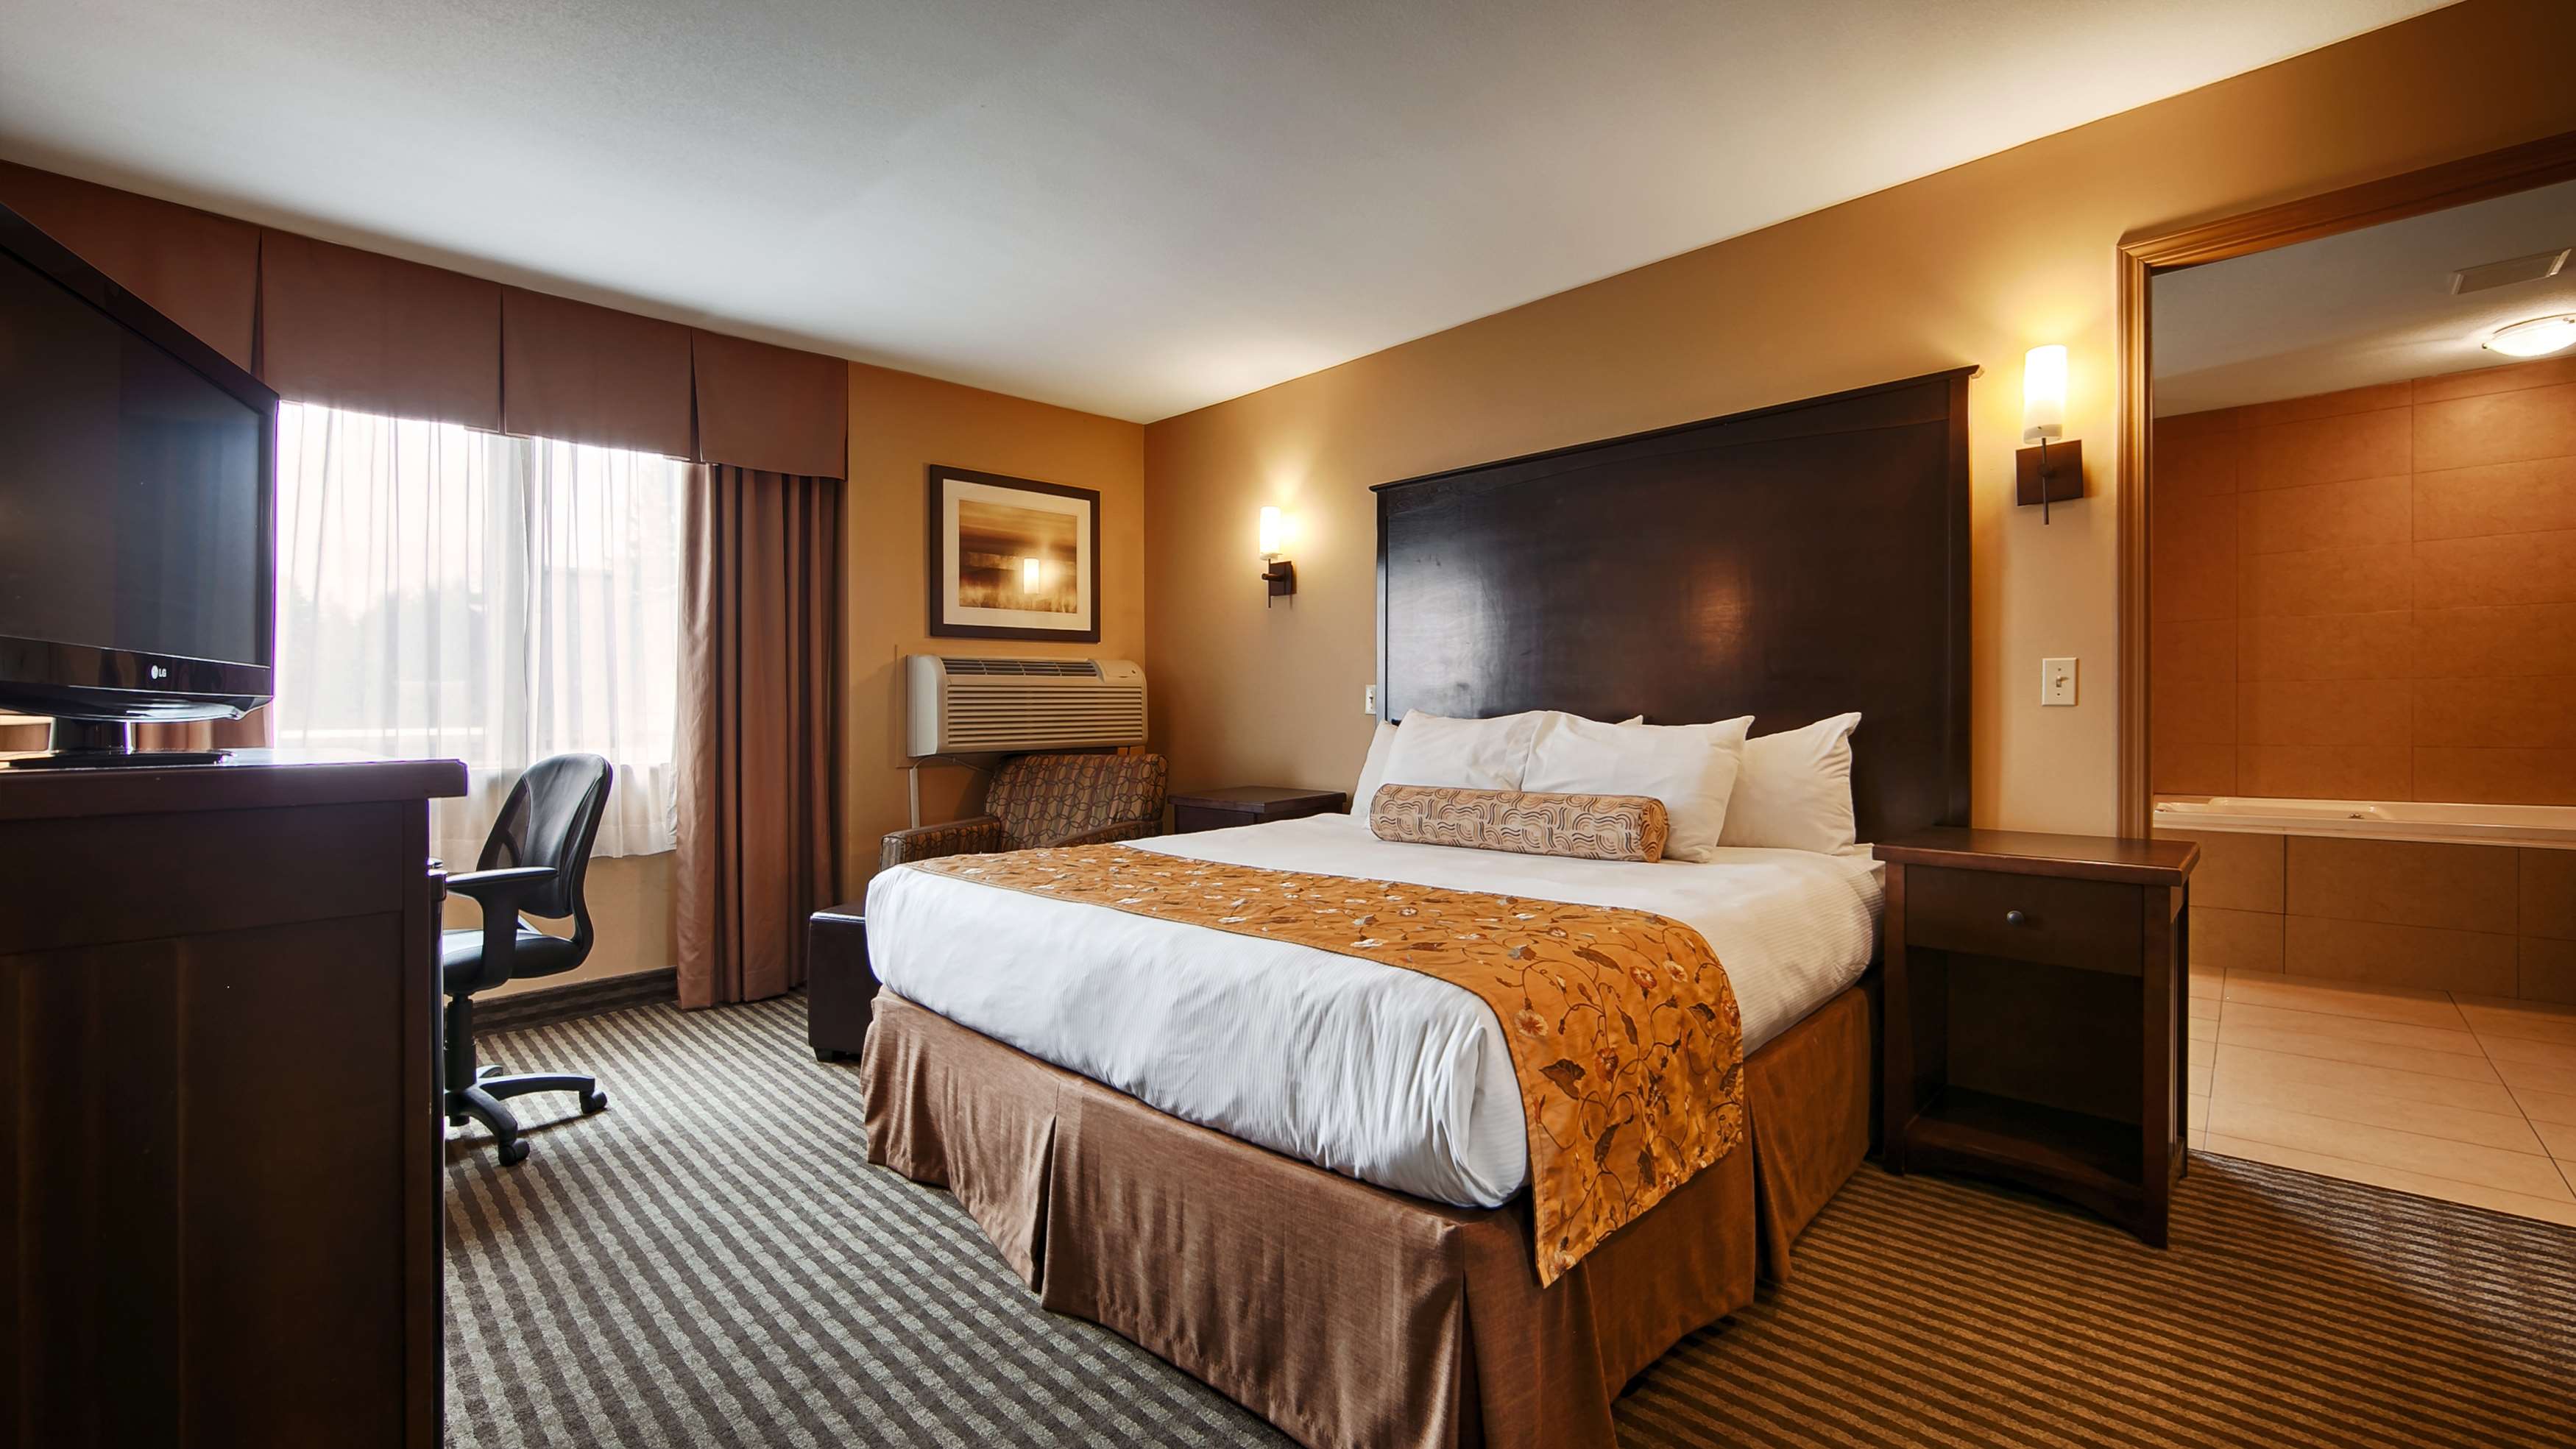 King Guest Room Best Western Maple Ridge Hotel Maple Ridge (604)467-1511